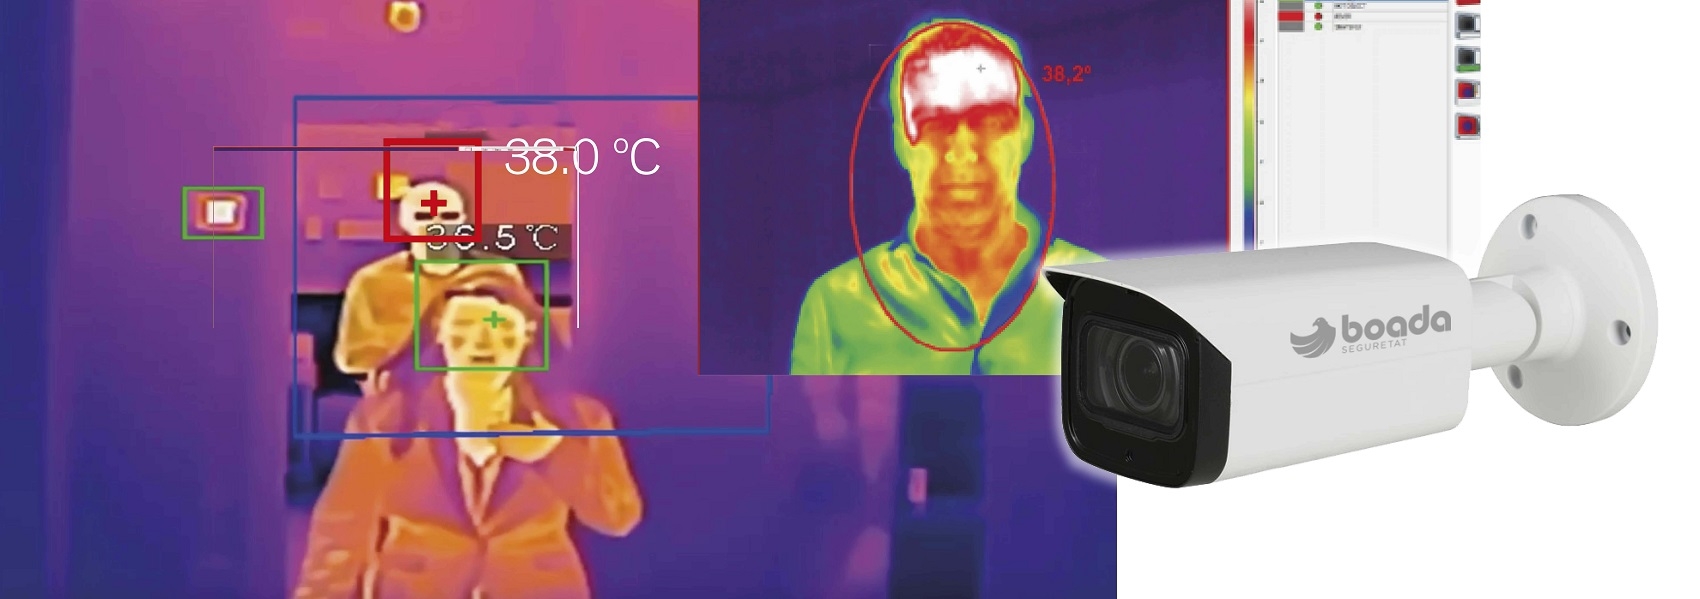 STOPTEMP Càmera de detecció de temperatura com a mesura de contenció del COVID-19.
Detecta persones amb febre o en un rang de temperatura determinat.
Análisi simultani de front, ulls i orelles.
